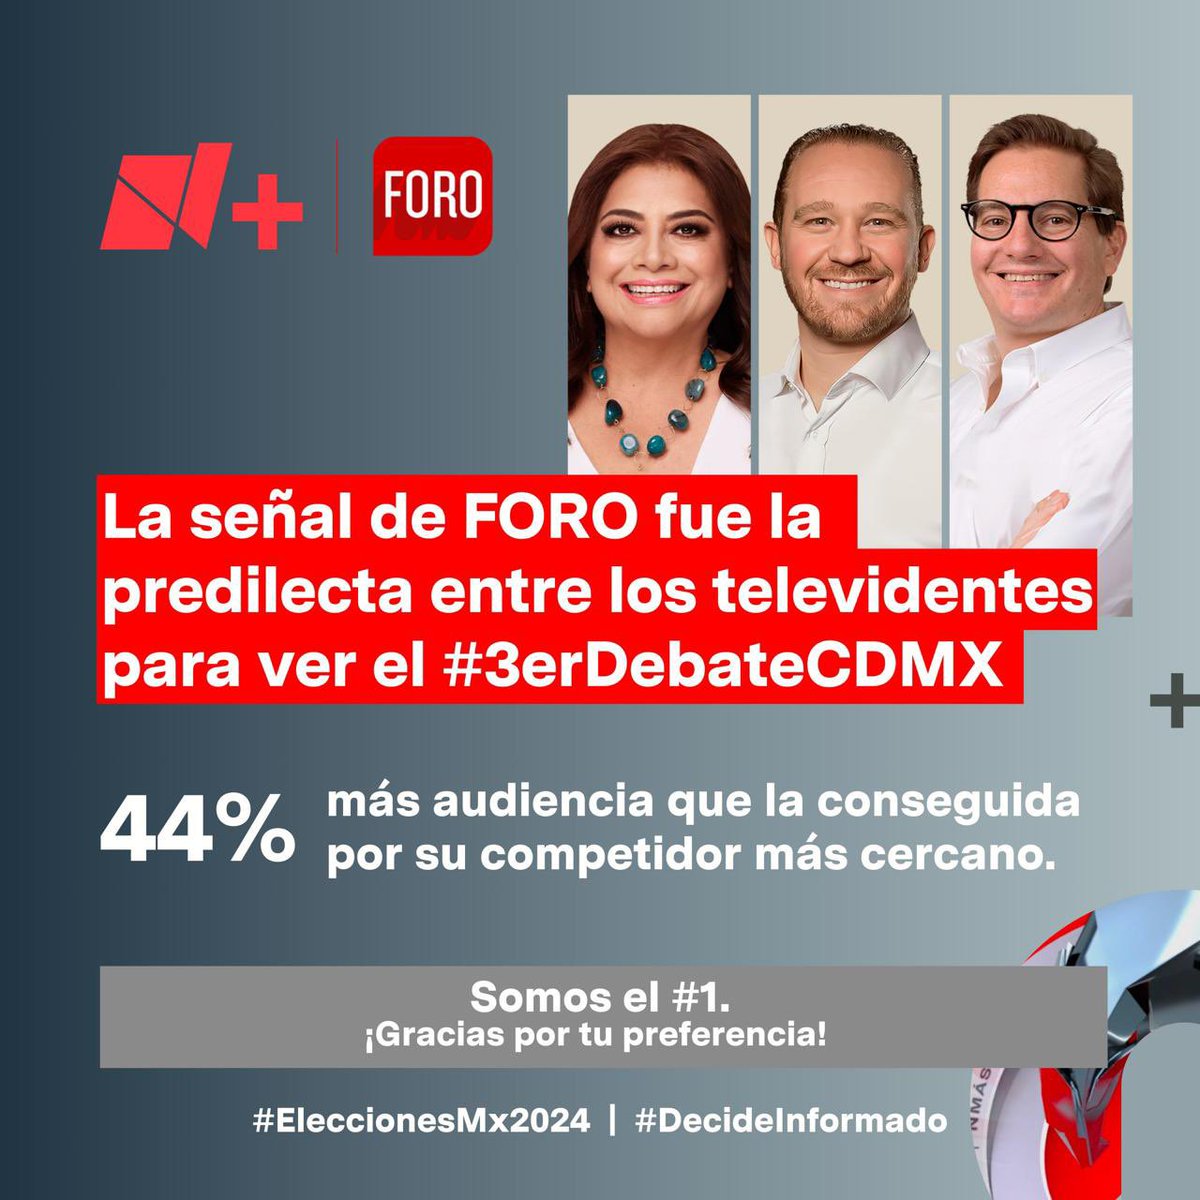 La transmisión de #ForoTV del #3erDebateCDMX fue la predilecta entre los televidentes, superando en 44% la audiencia de su competidor más cercano. Somos el #1. ¡Gracias por tu preferencia! #DecideInformado #EleccionesMx2024